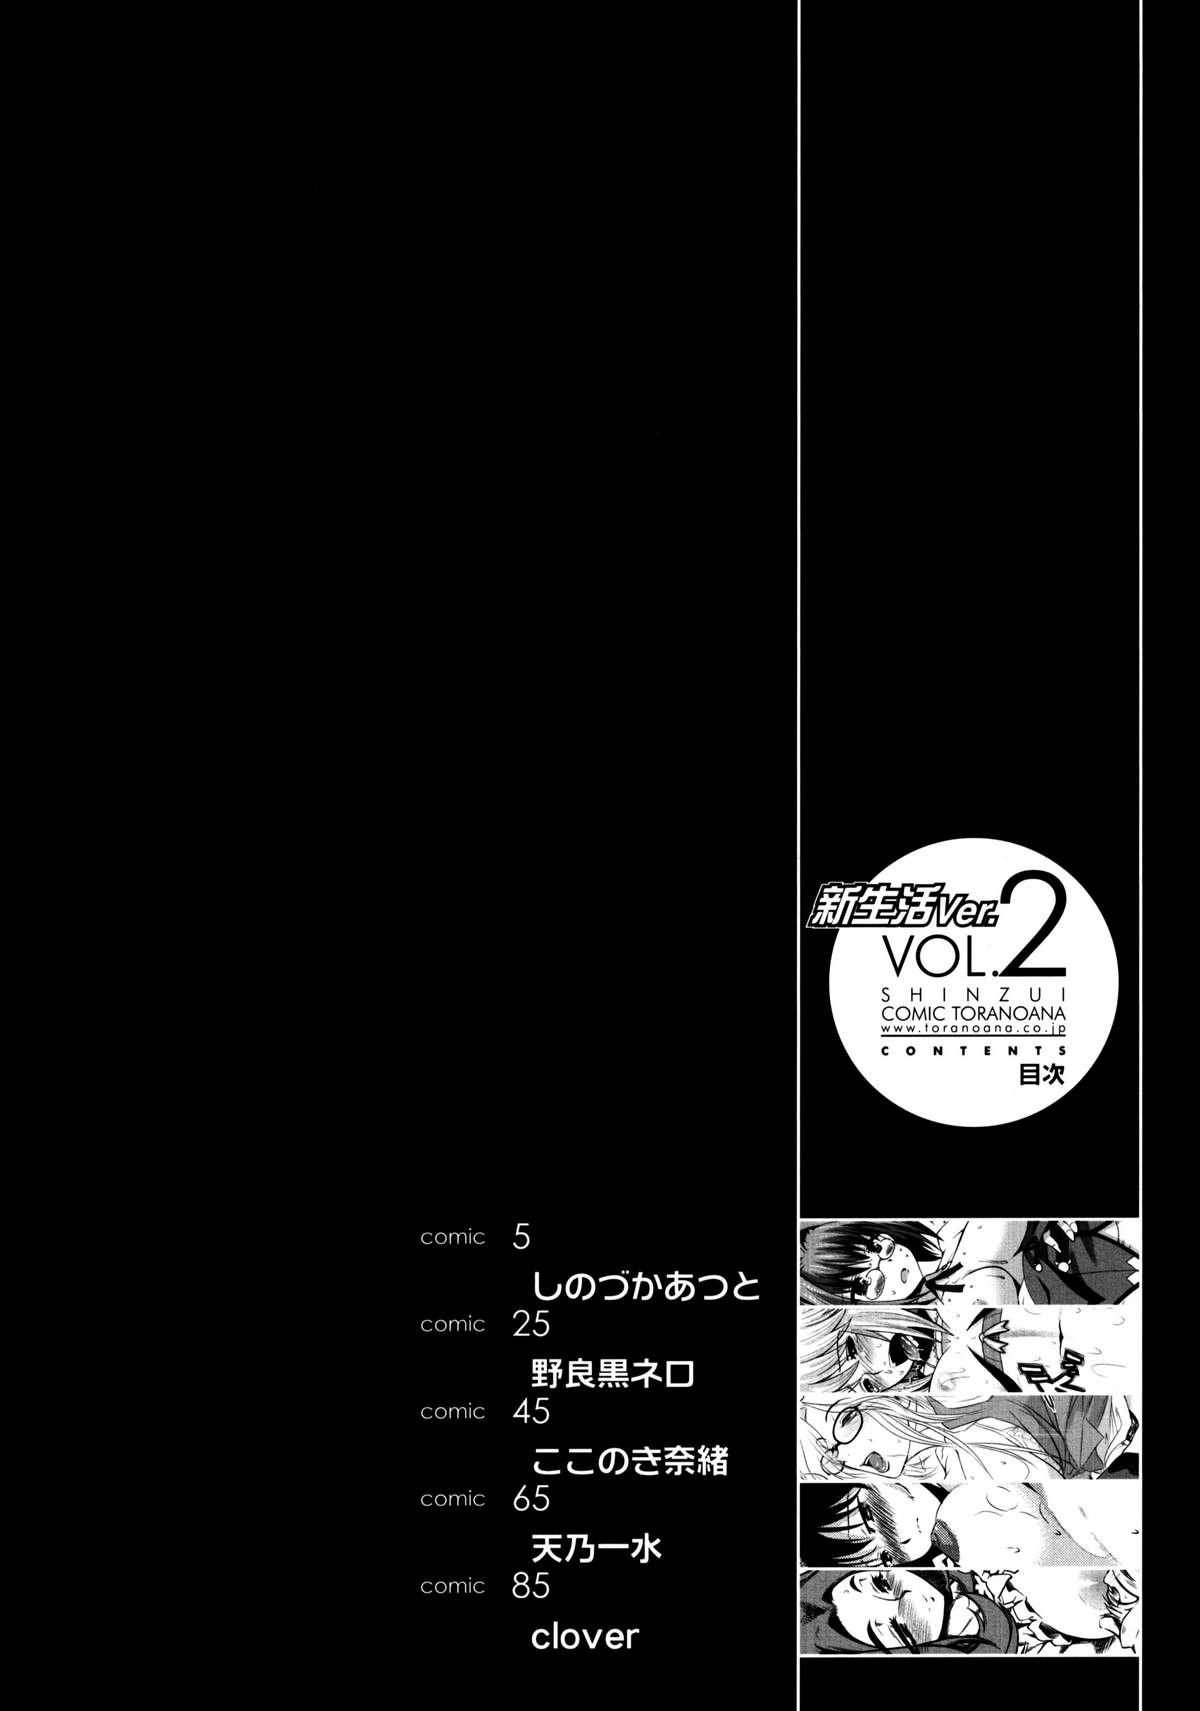 Shinzui Shinseikatsu Ver. Vol. 2 | Shinzui New Life Ver. Vol.2 3